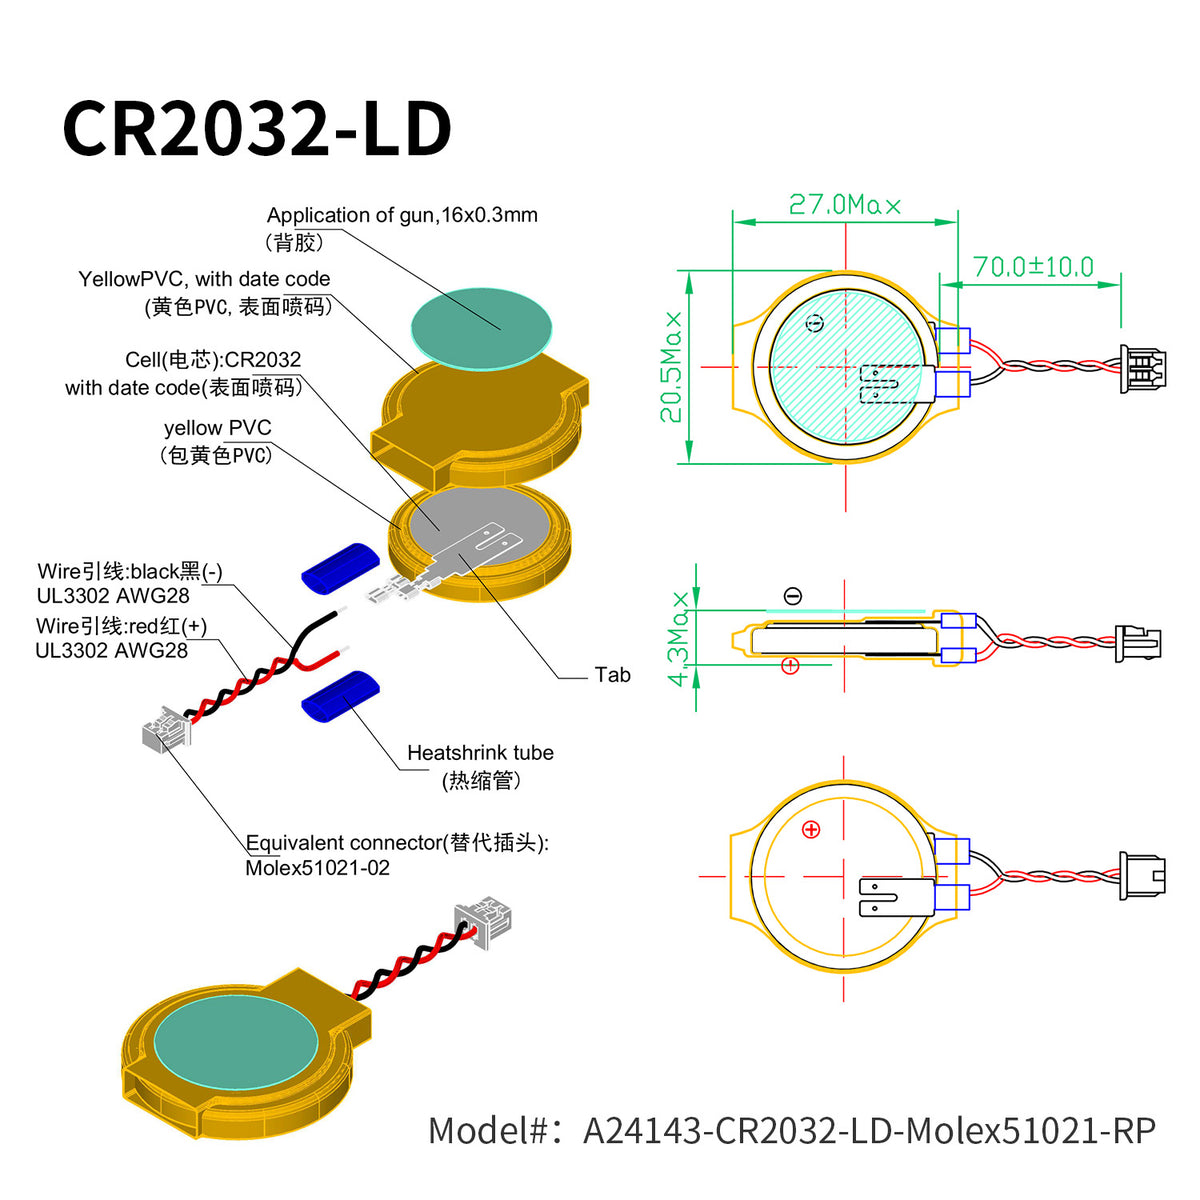 A23085-CR2032-LD-MX51021-RP